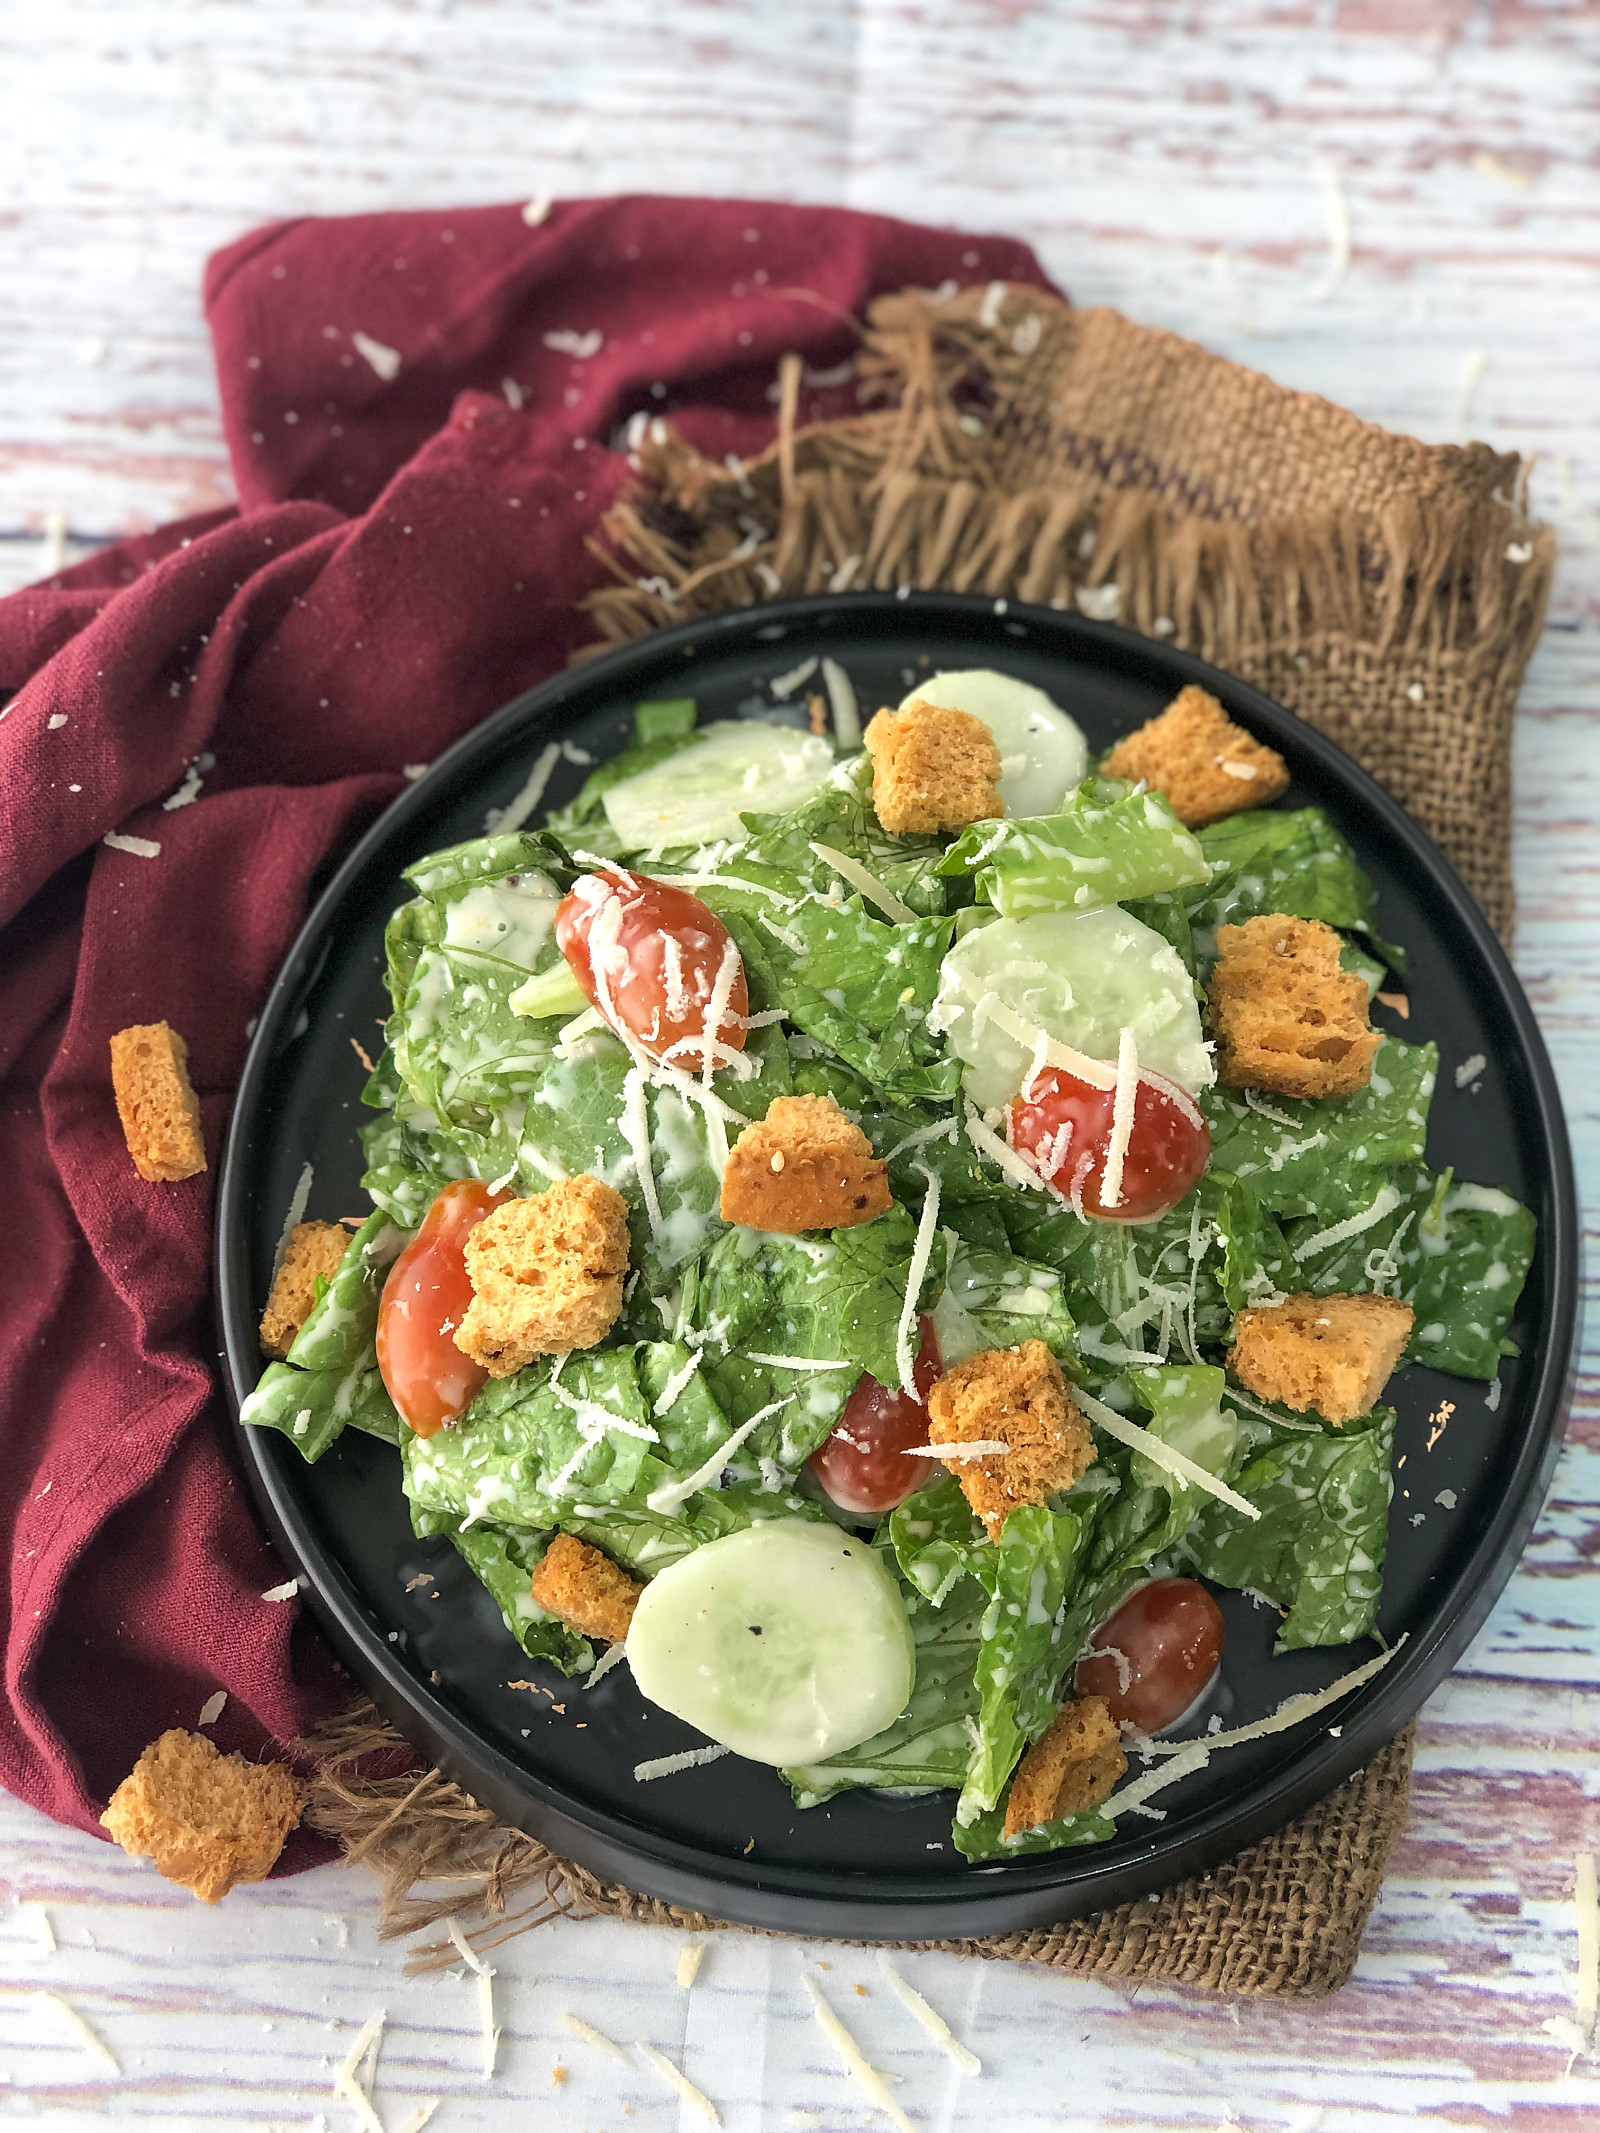 क्लासिक सिज़र सलाद रेसिपी - Classic Caesar Salad Recipe